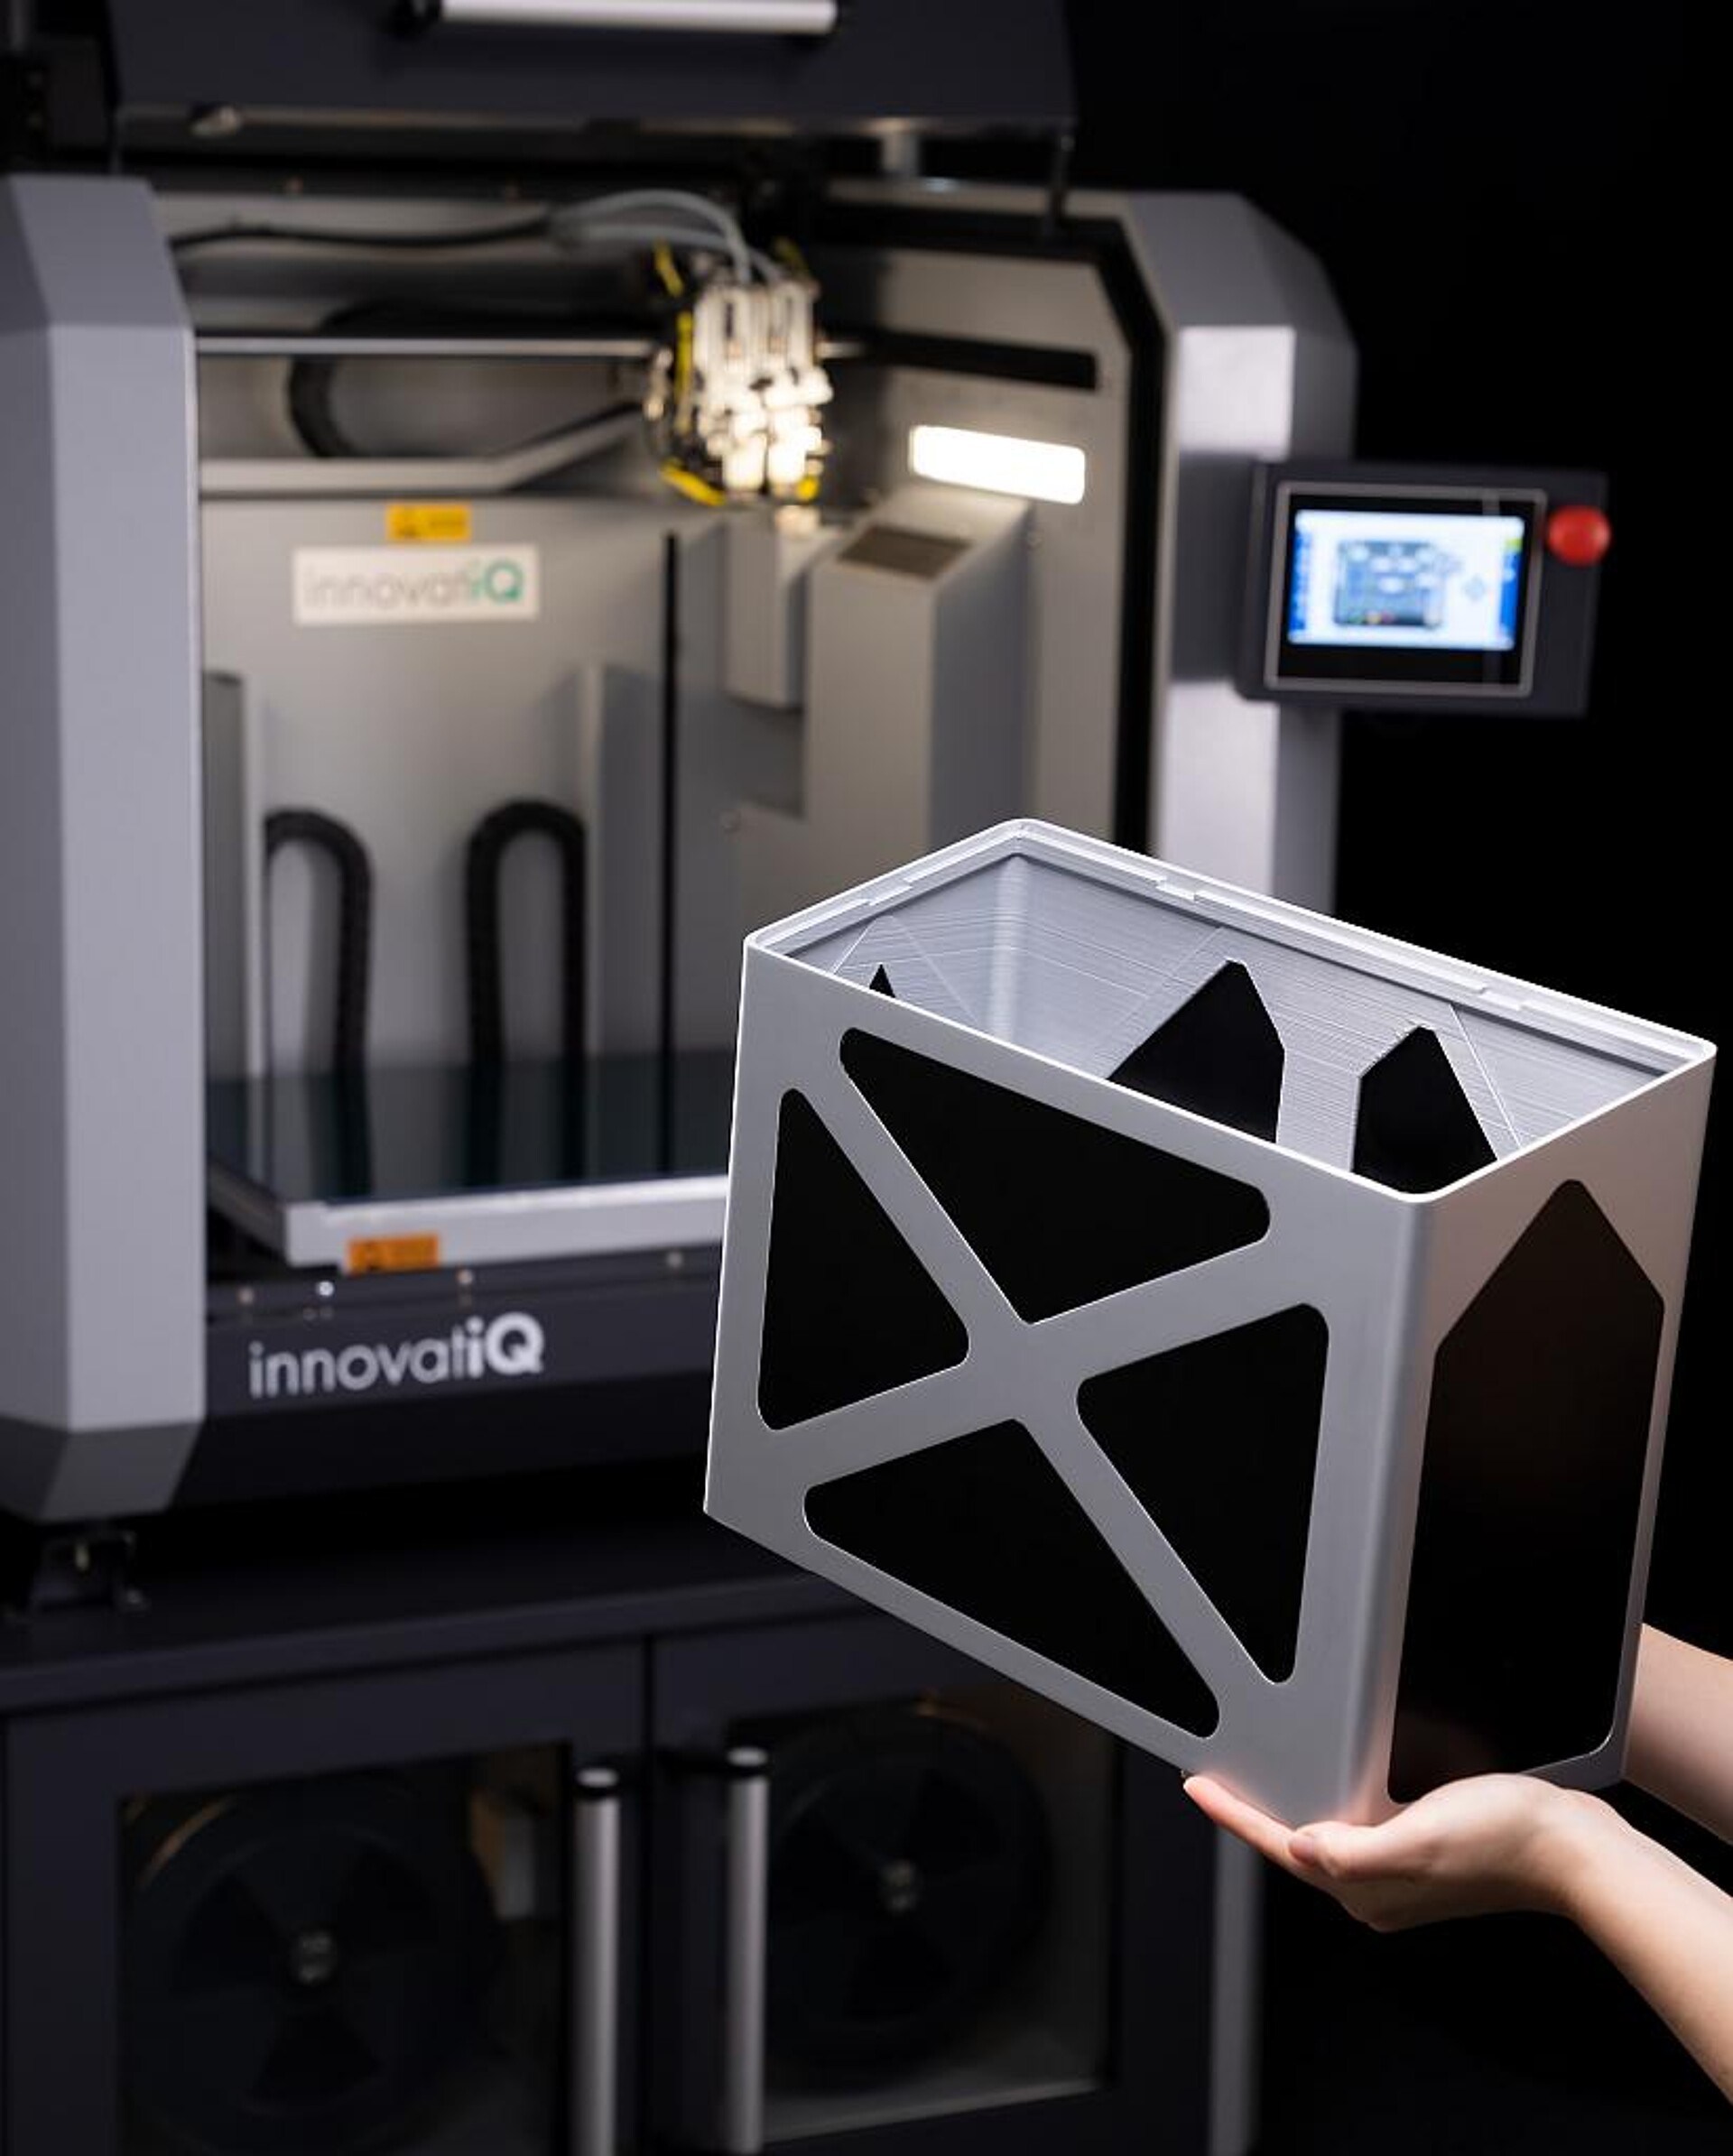 Für die Herstellung von Bauteilen mittels FDM-Technologie steht im Faberlab ein Drucker innovatiQ TiQ 5 zur Verfügung. (Foto: innovatiQ)
